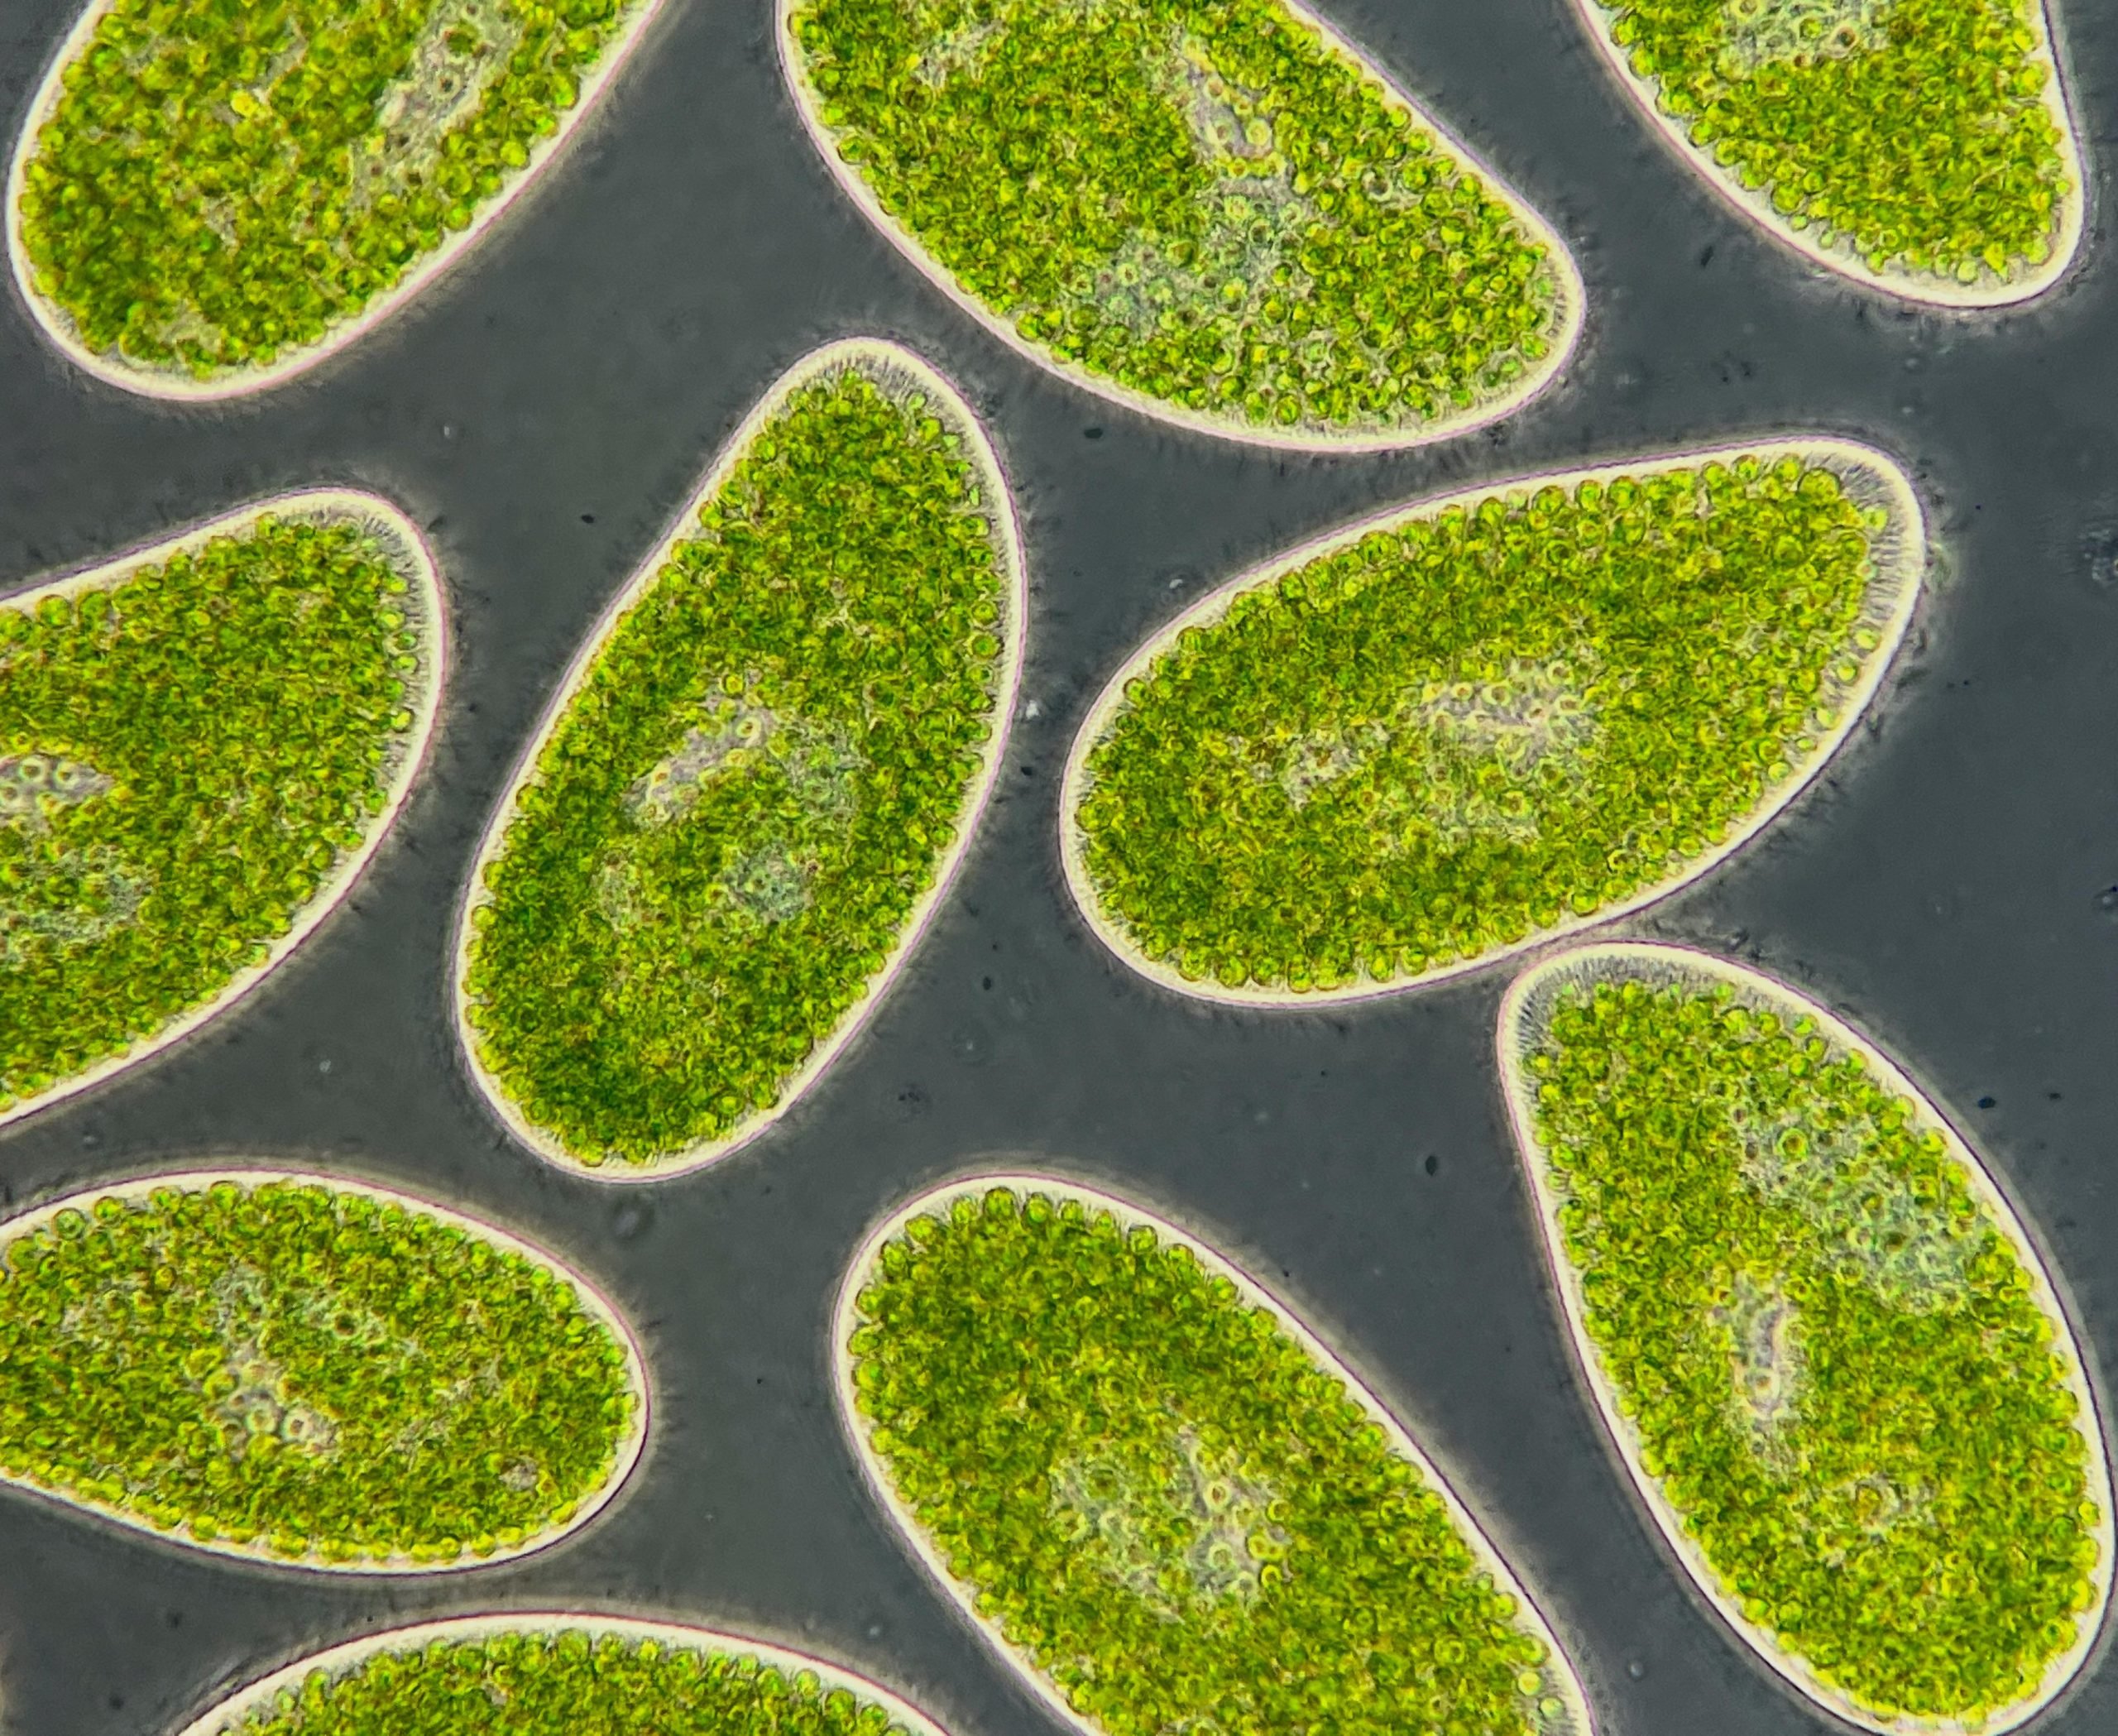 Microbii necunoscuți pot fi un semnal de avertizare timpurie a unui punct de răsturnare climatică